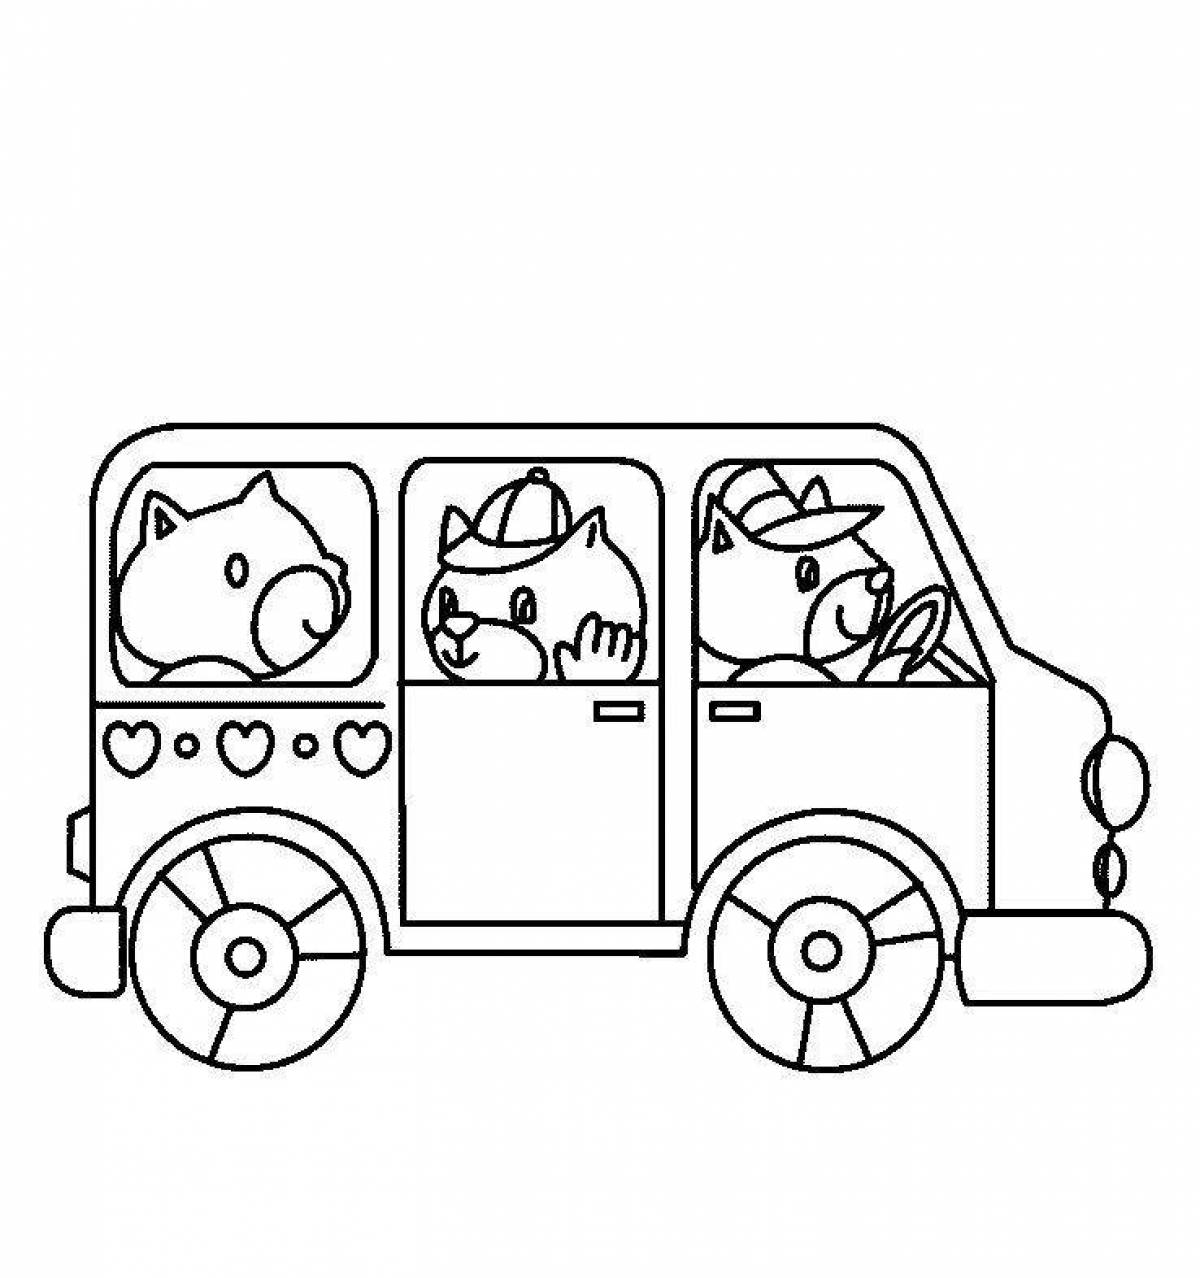 Увлекательная раскраска автобуса для детей 3-4 лет